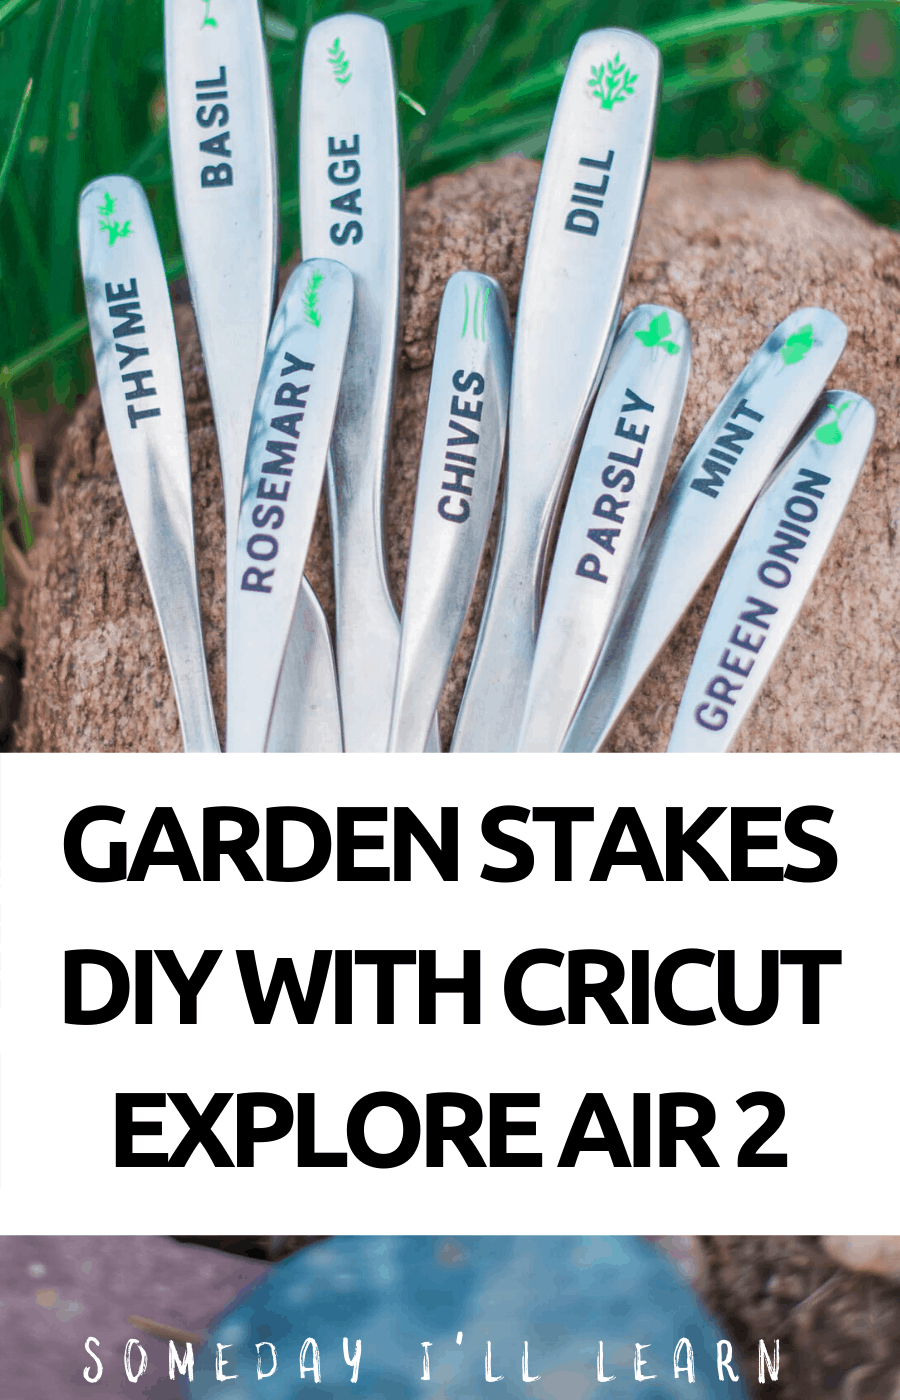 Garden stakes diy with cricut explore air 2